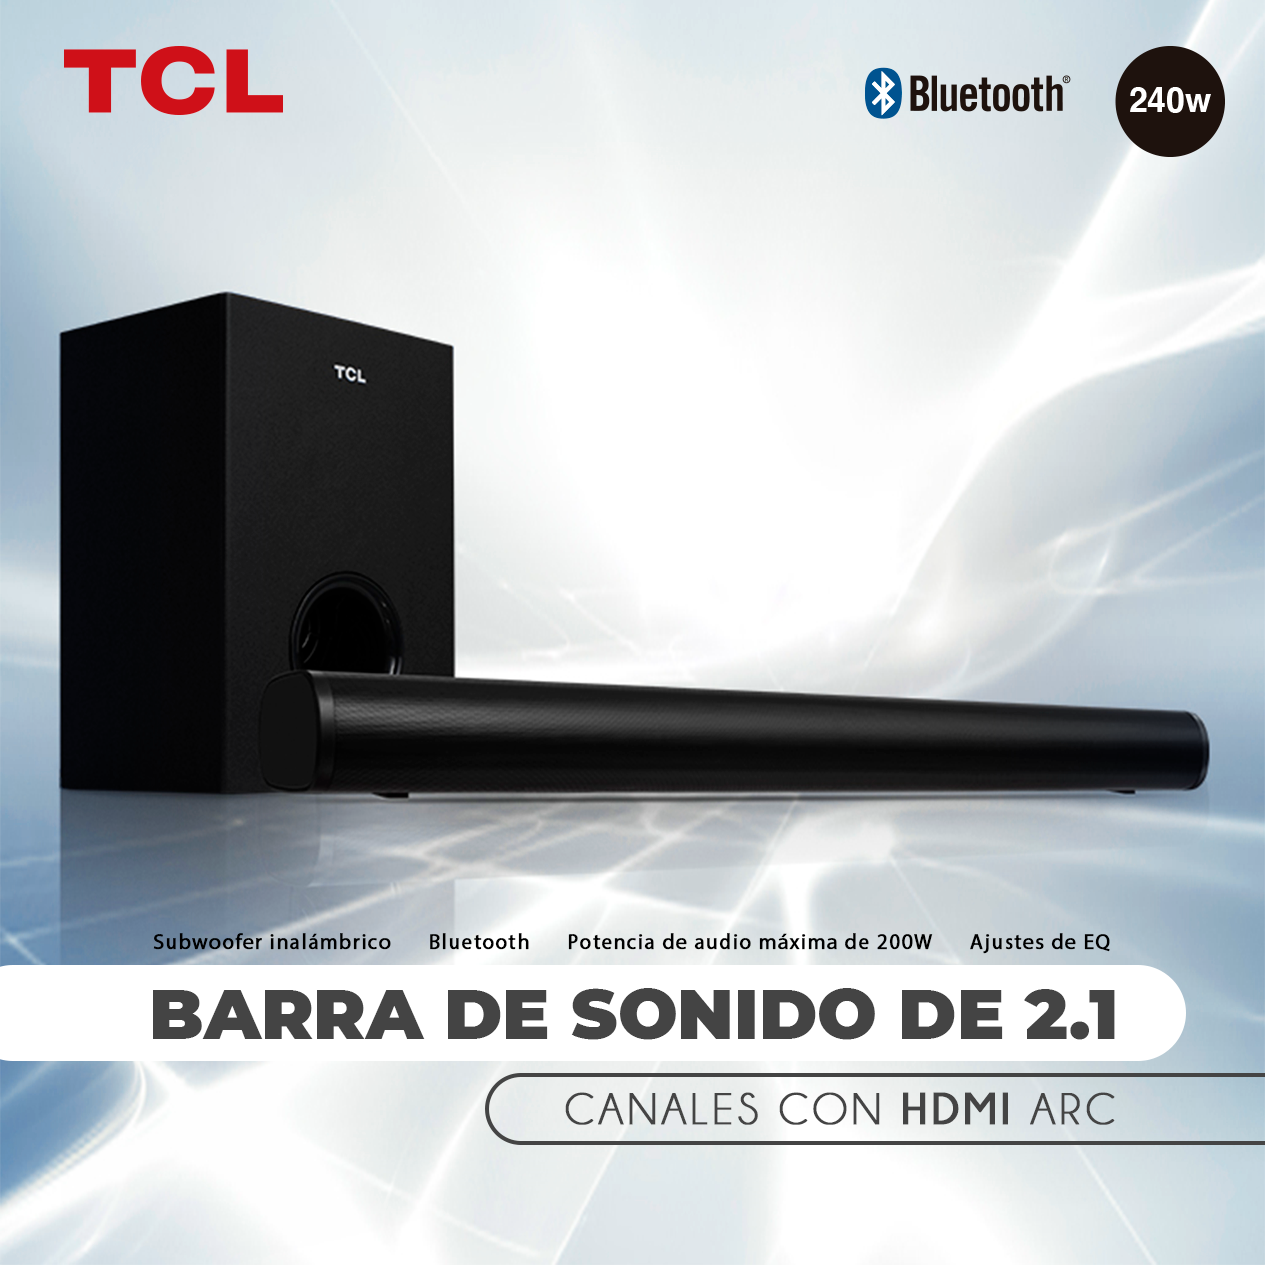 TCL S522W, una barra de sonido con HDMI ARC y subwoofer inalámbrico